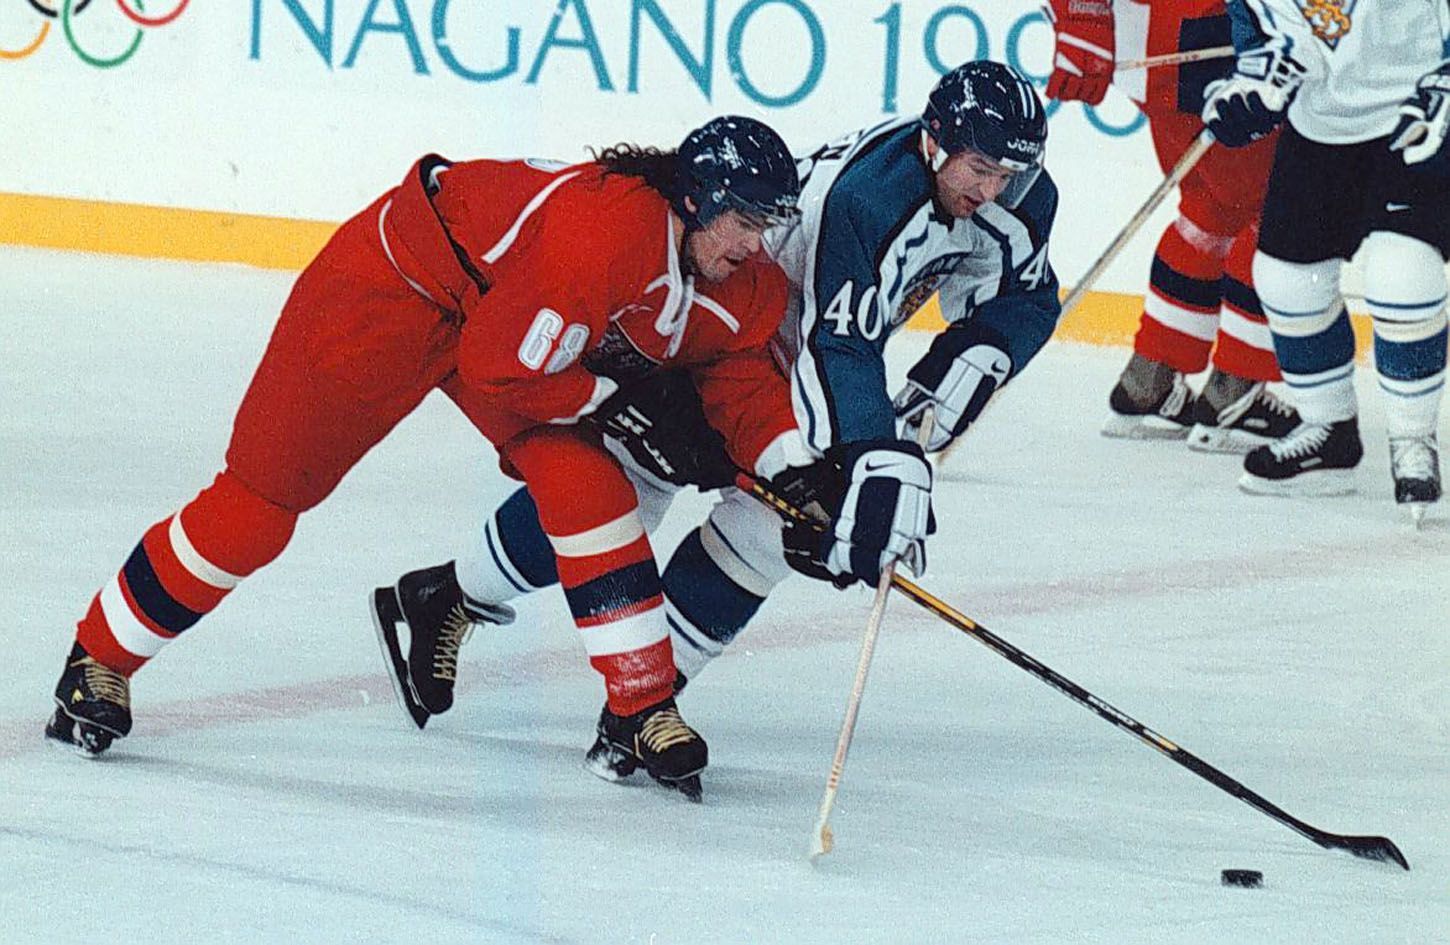 Archivní snímky z ZOH Nagano 1998 - hokej. Jaromír Jágr